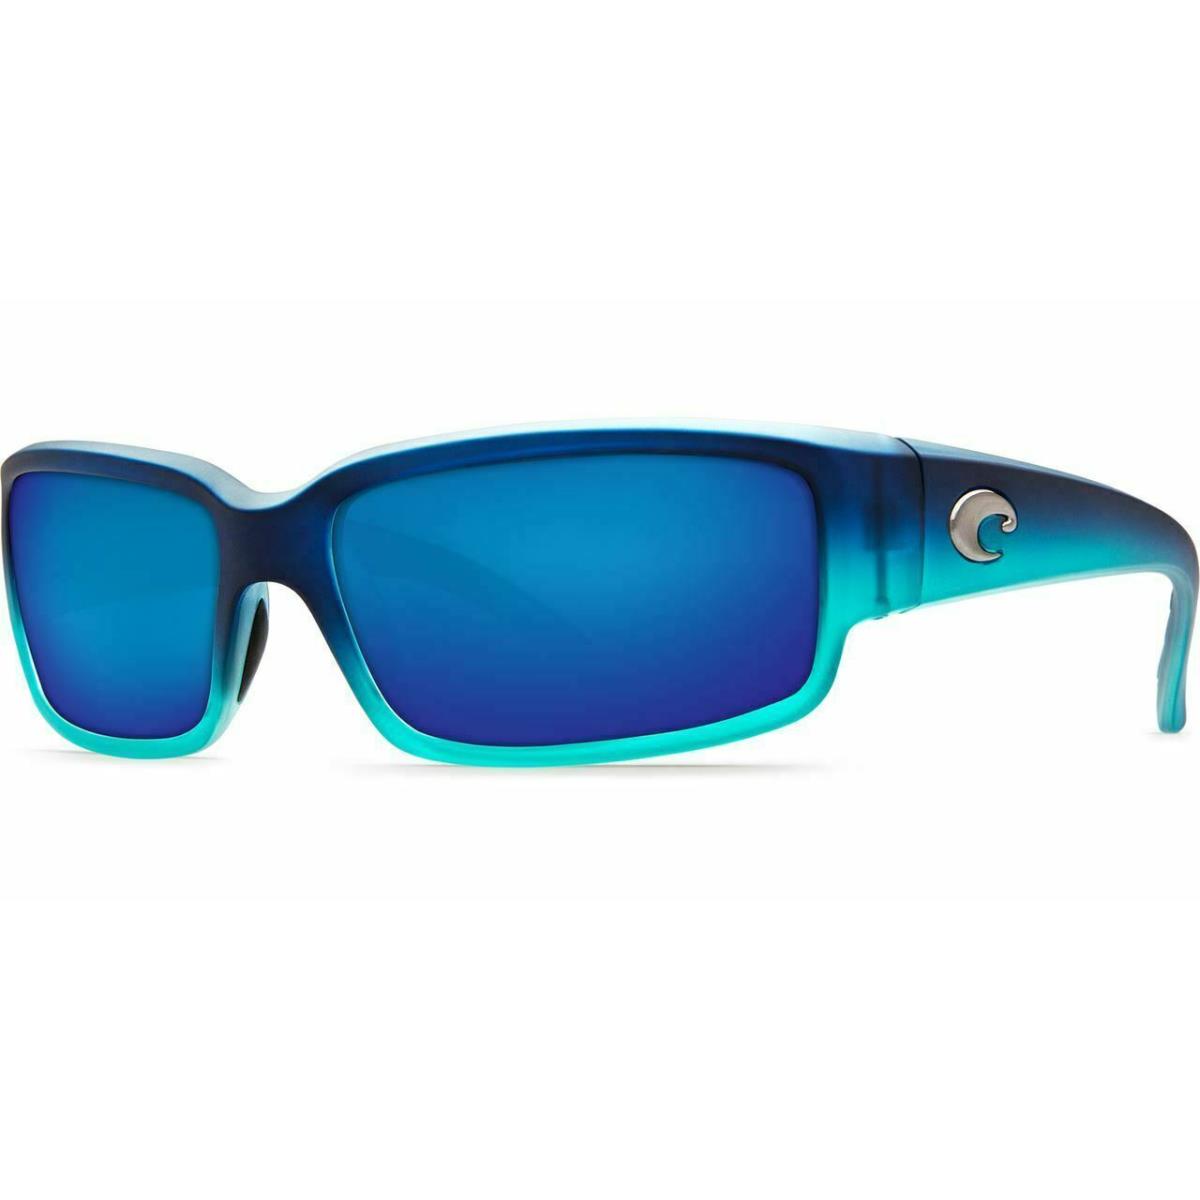 Costa Del Mar Caballito Sunglasses Matte Caribbean Fade Blue 580P CL73OBMP - Frame: